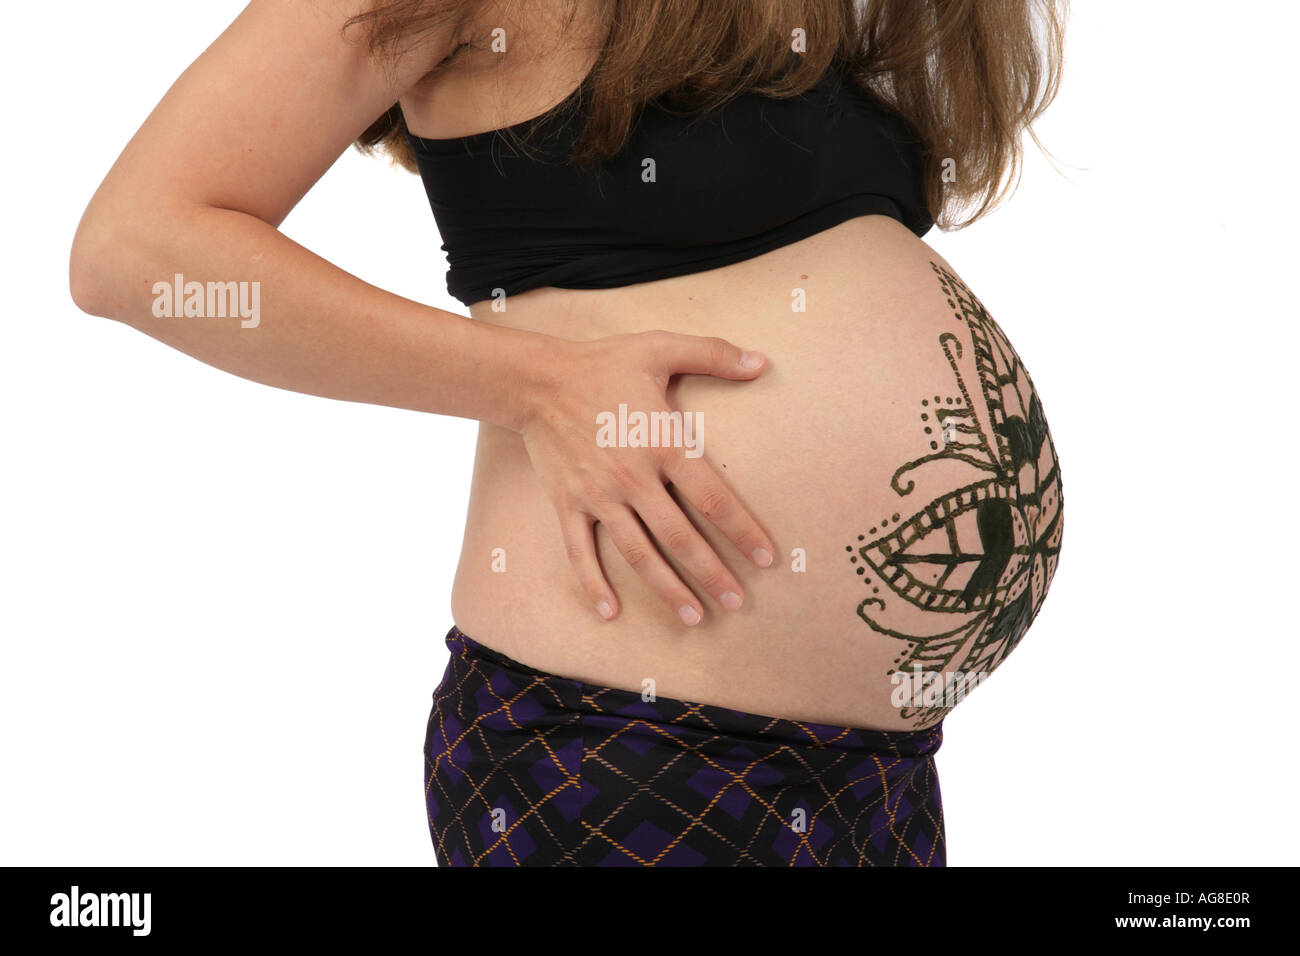 Tatouage au henné sur le ventre d'une femme enceinte, Allemagne Photo Stock  - Alamy